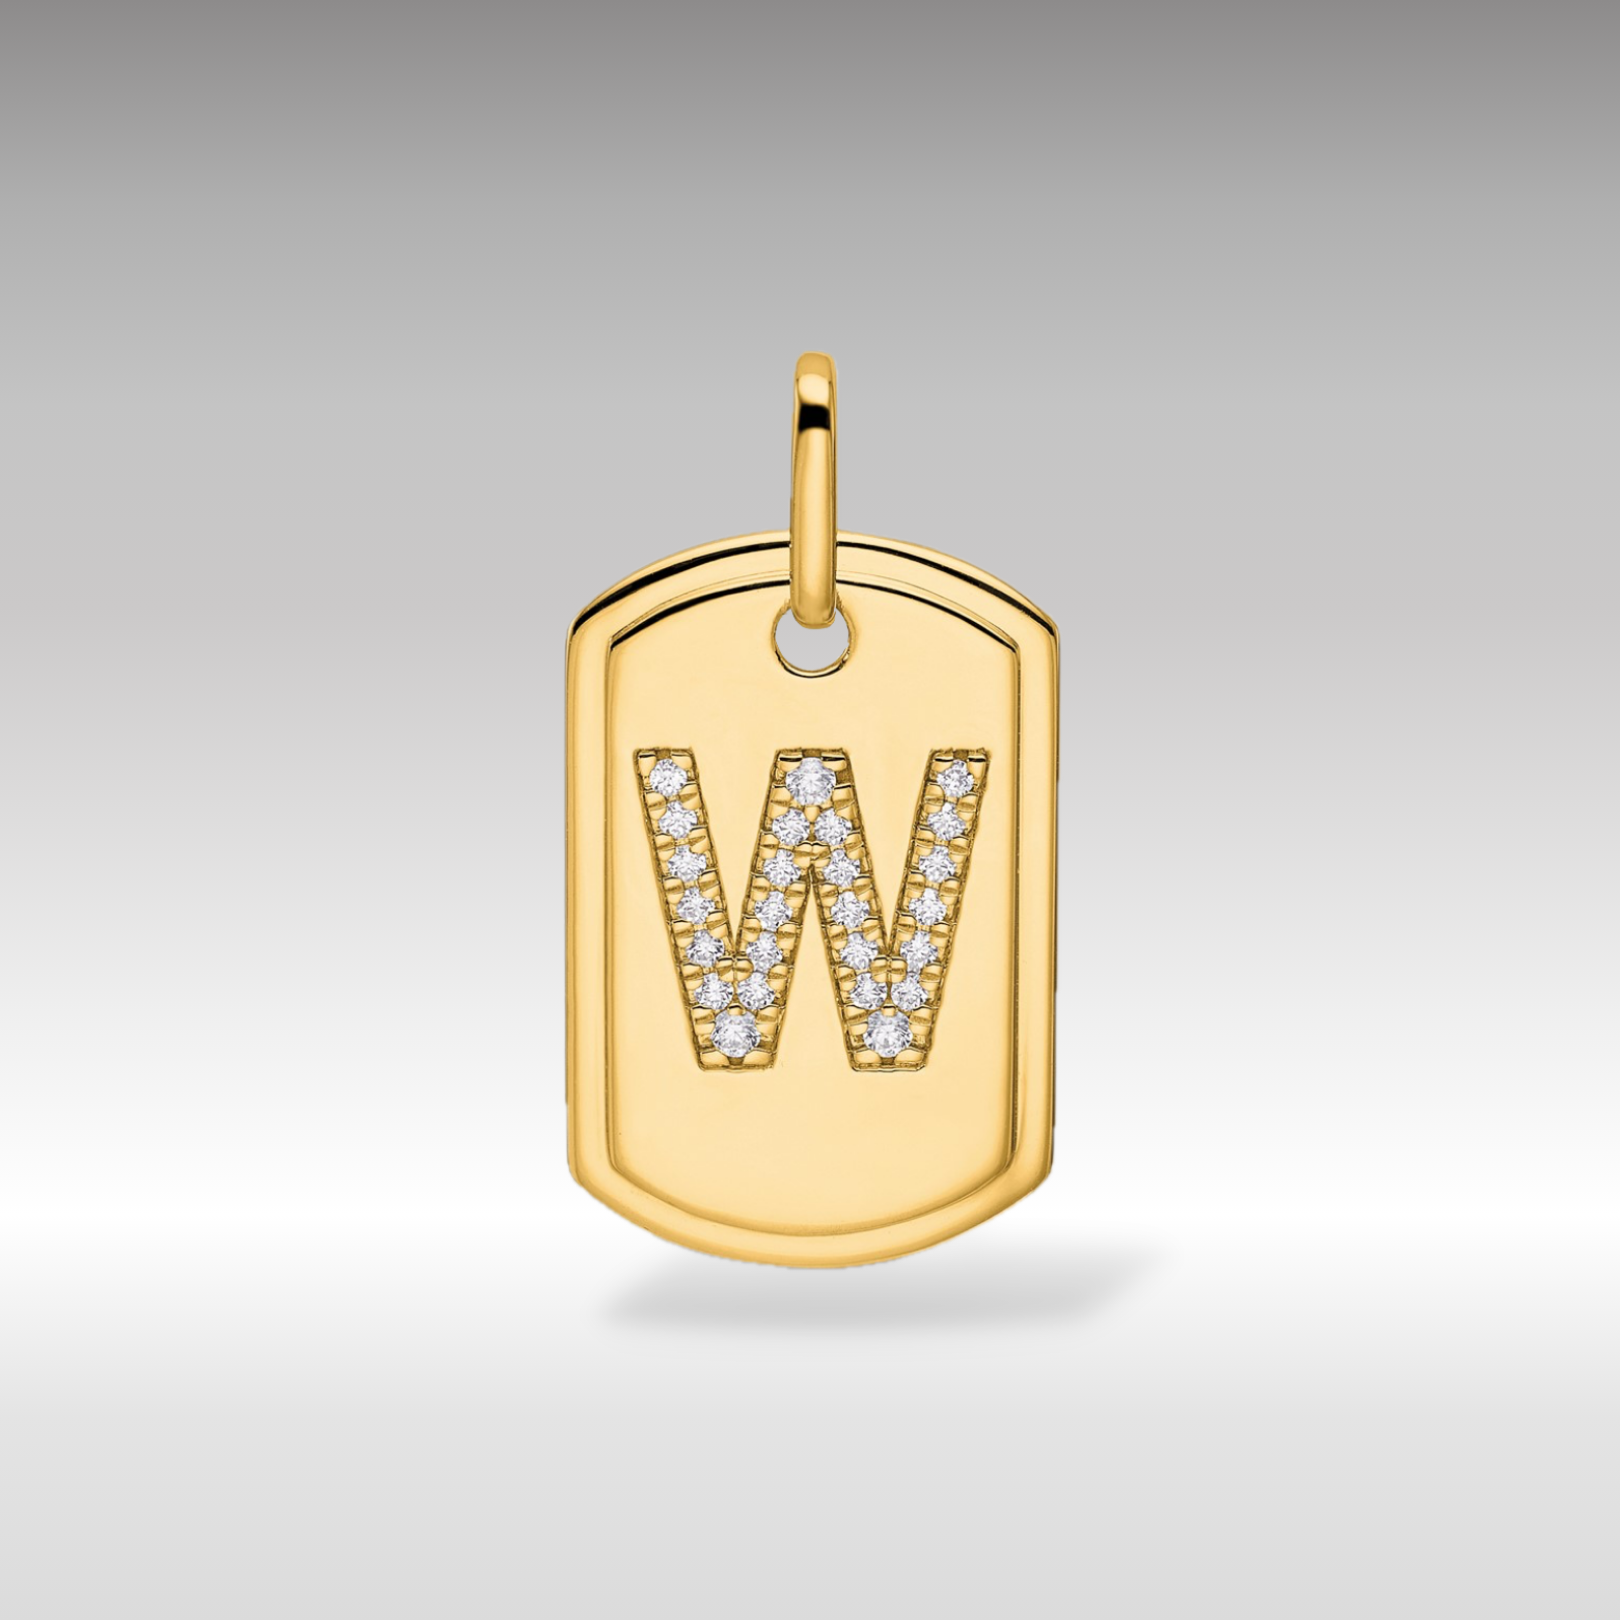 14K Gold Initial "W" Dog Tag With Genuine Diamonds - Charlie & Co. Jewelry